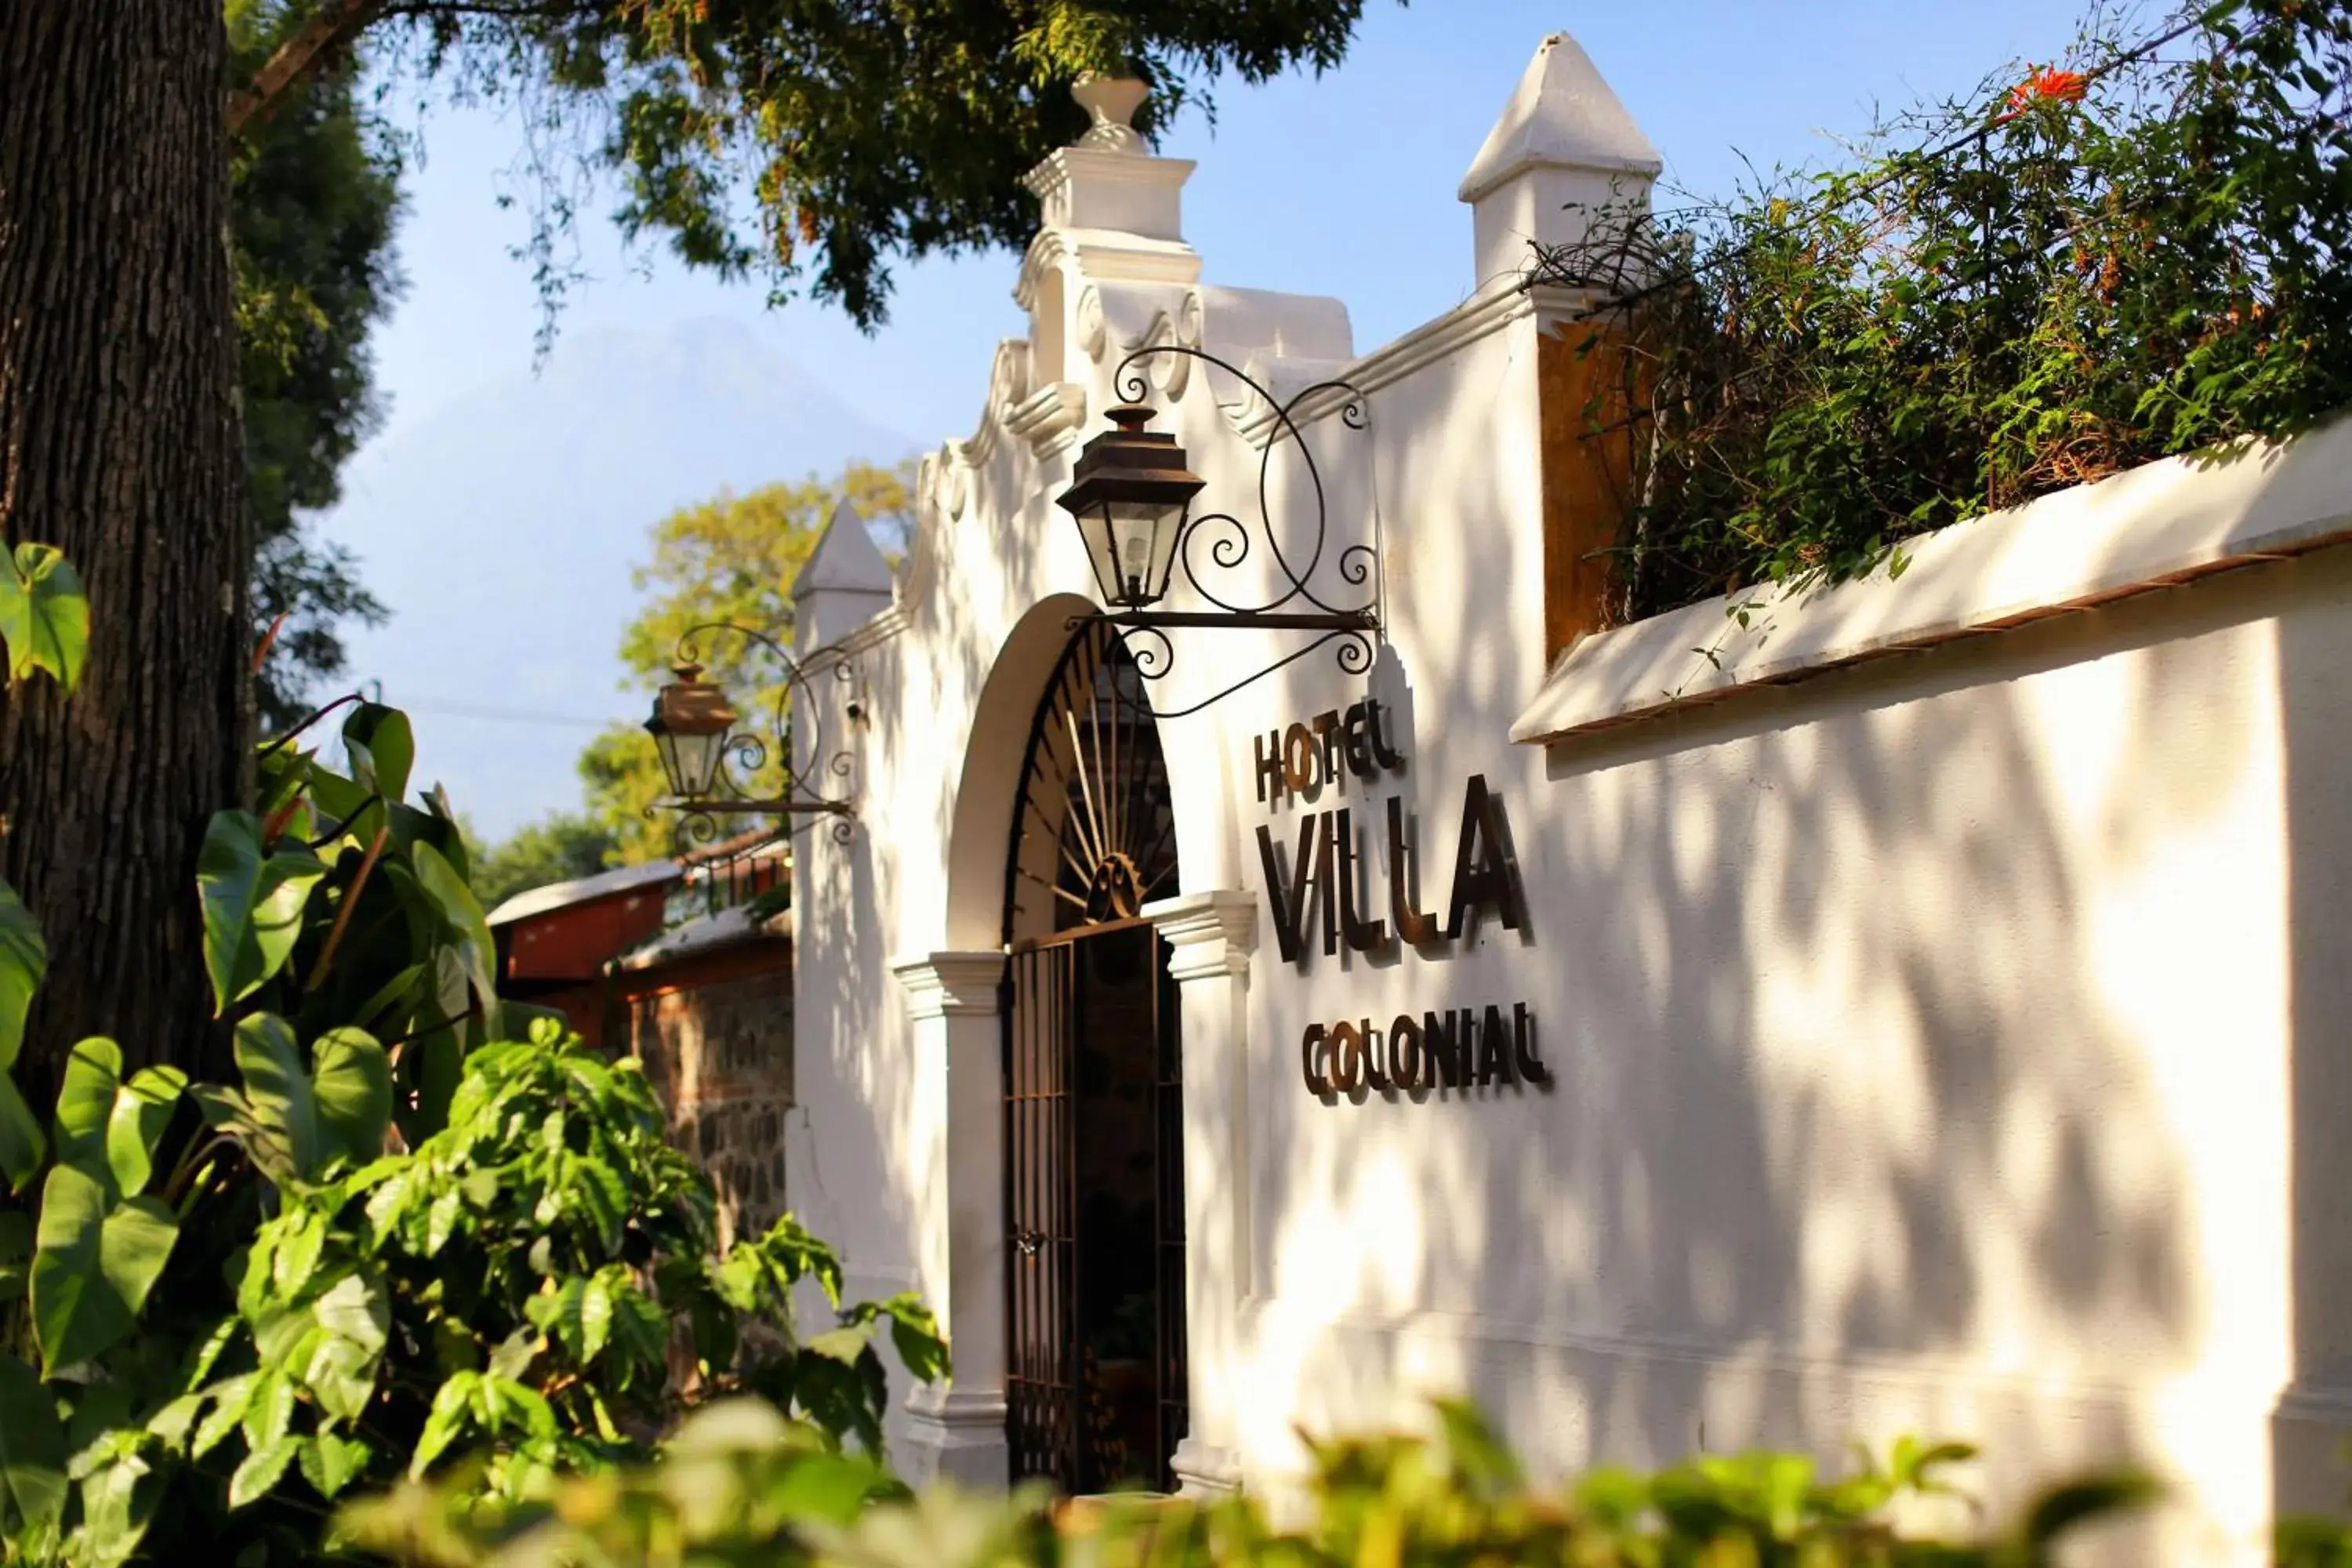 Property building in Villa Colonial